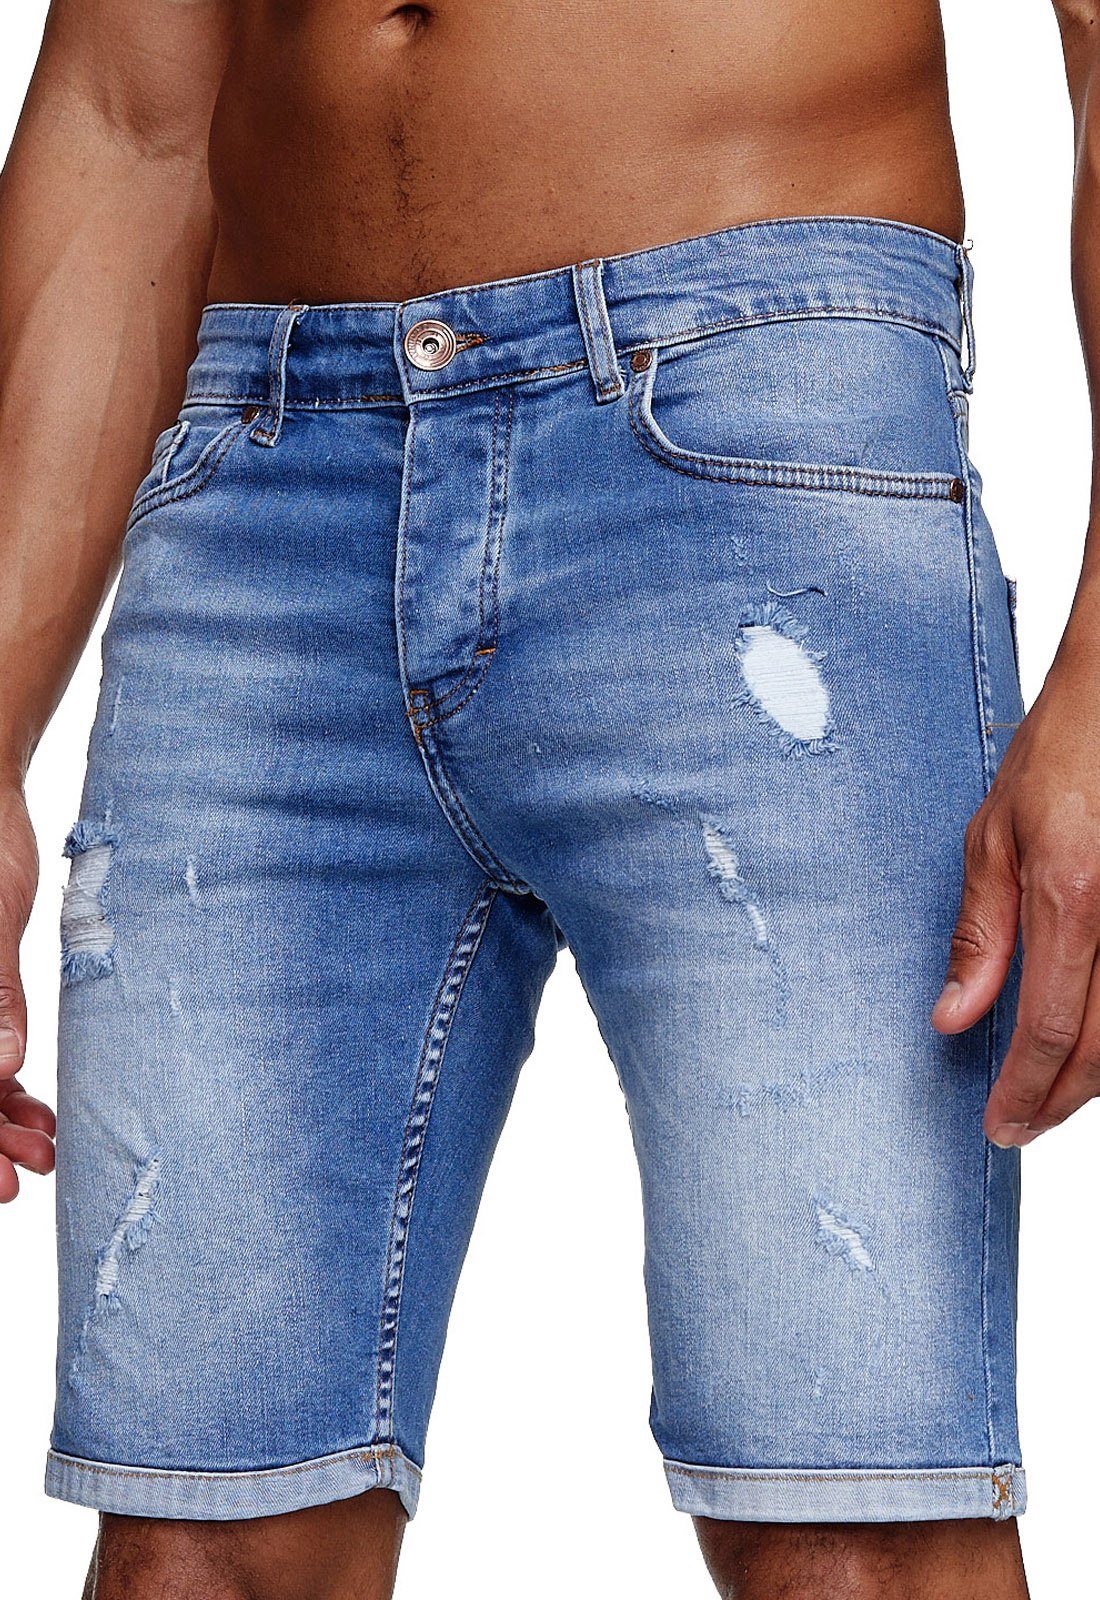 Jeans-Shorts für Herren online kaufen | OTTO